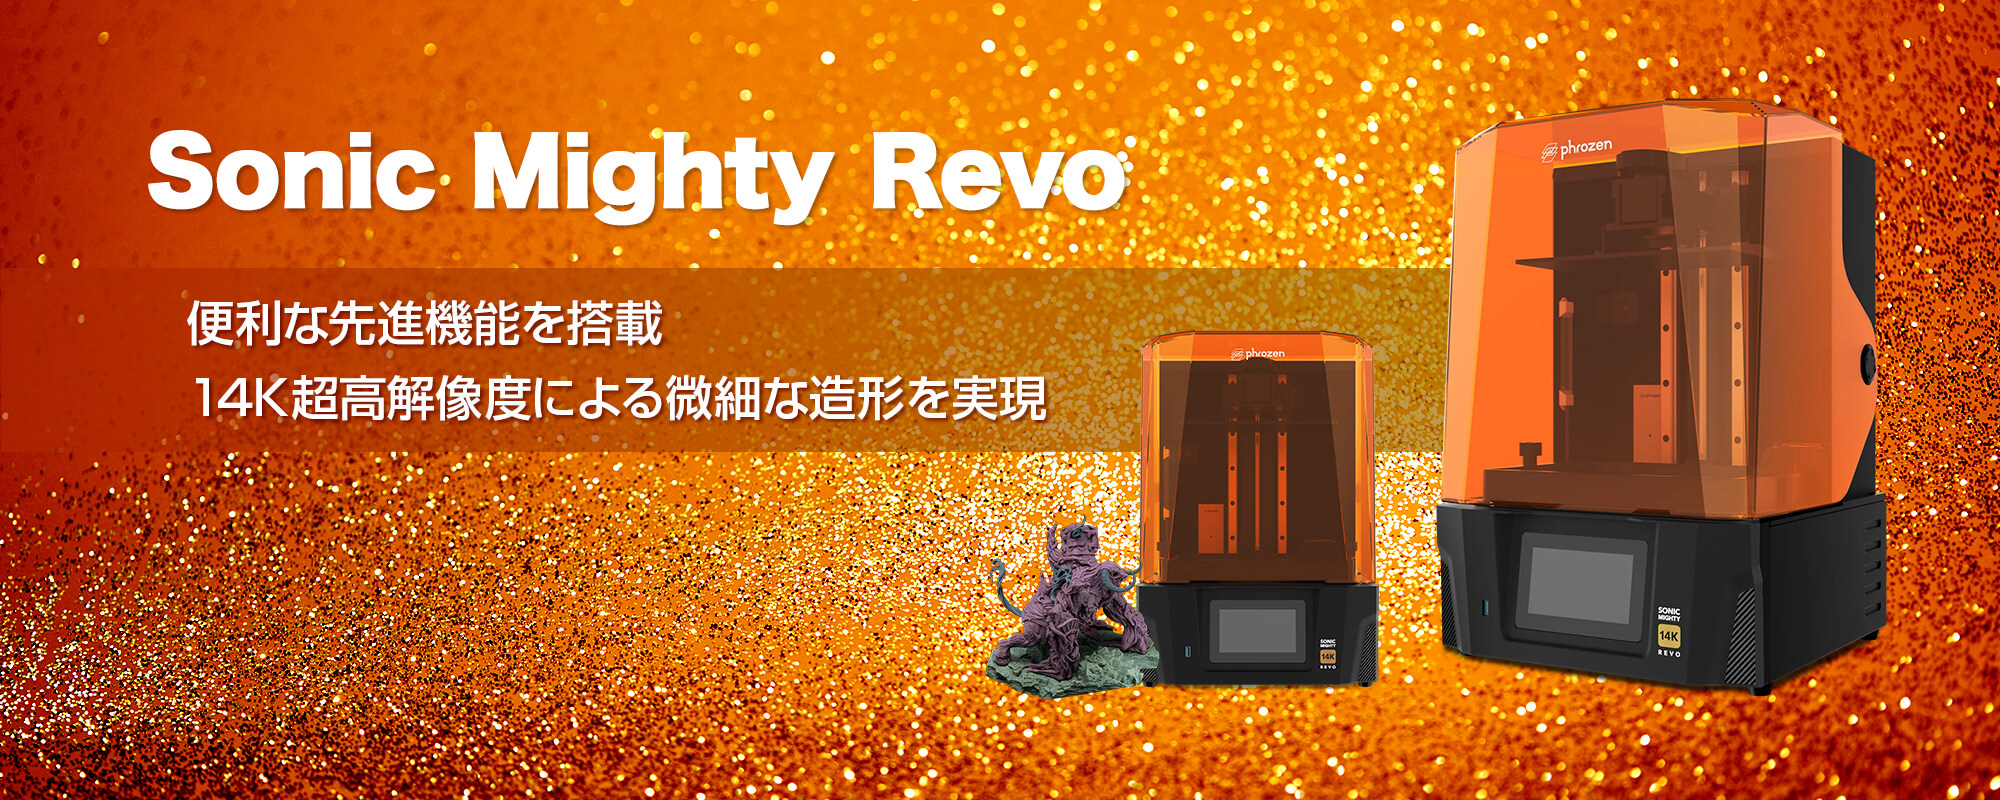 Sonic Mighty Revo｜便利な先進機能を搭載、14K超高解像度による微細な造形を実現